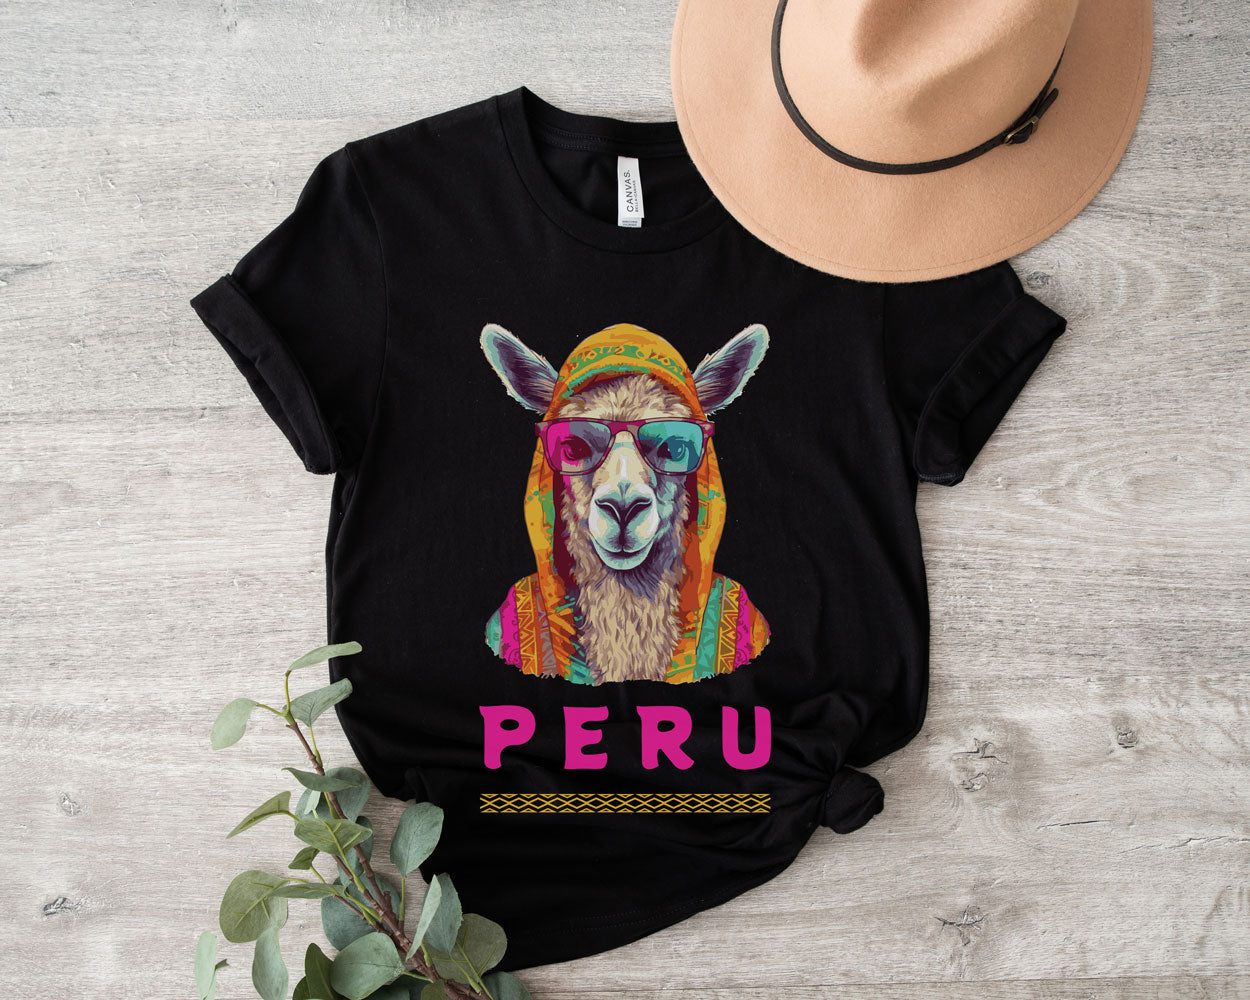 Peru graphic tshirt.